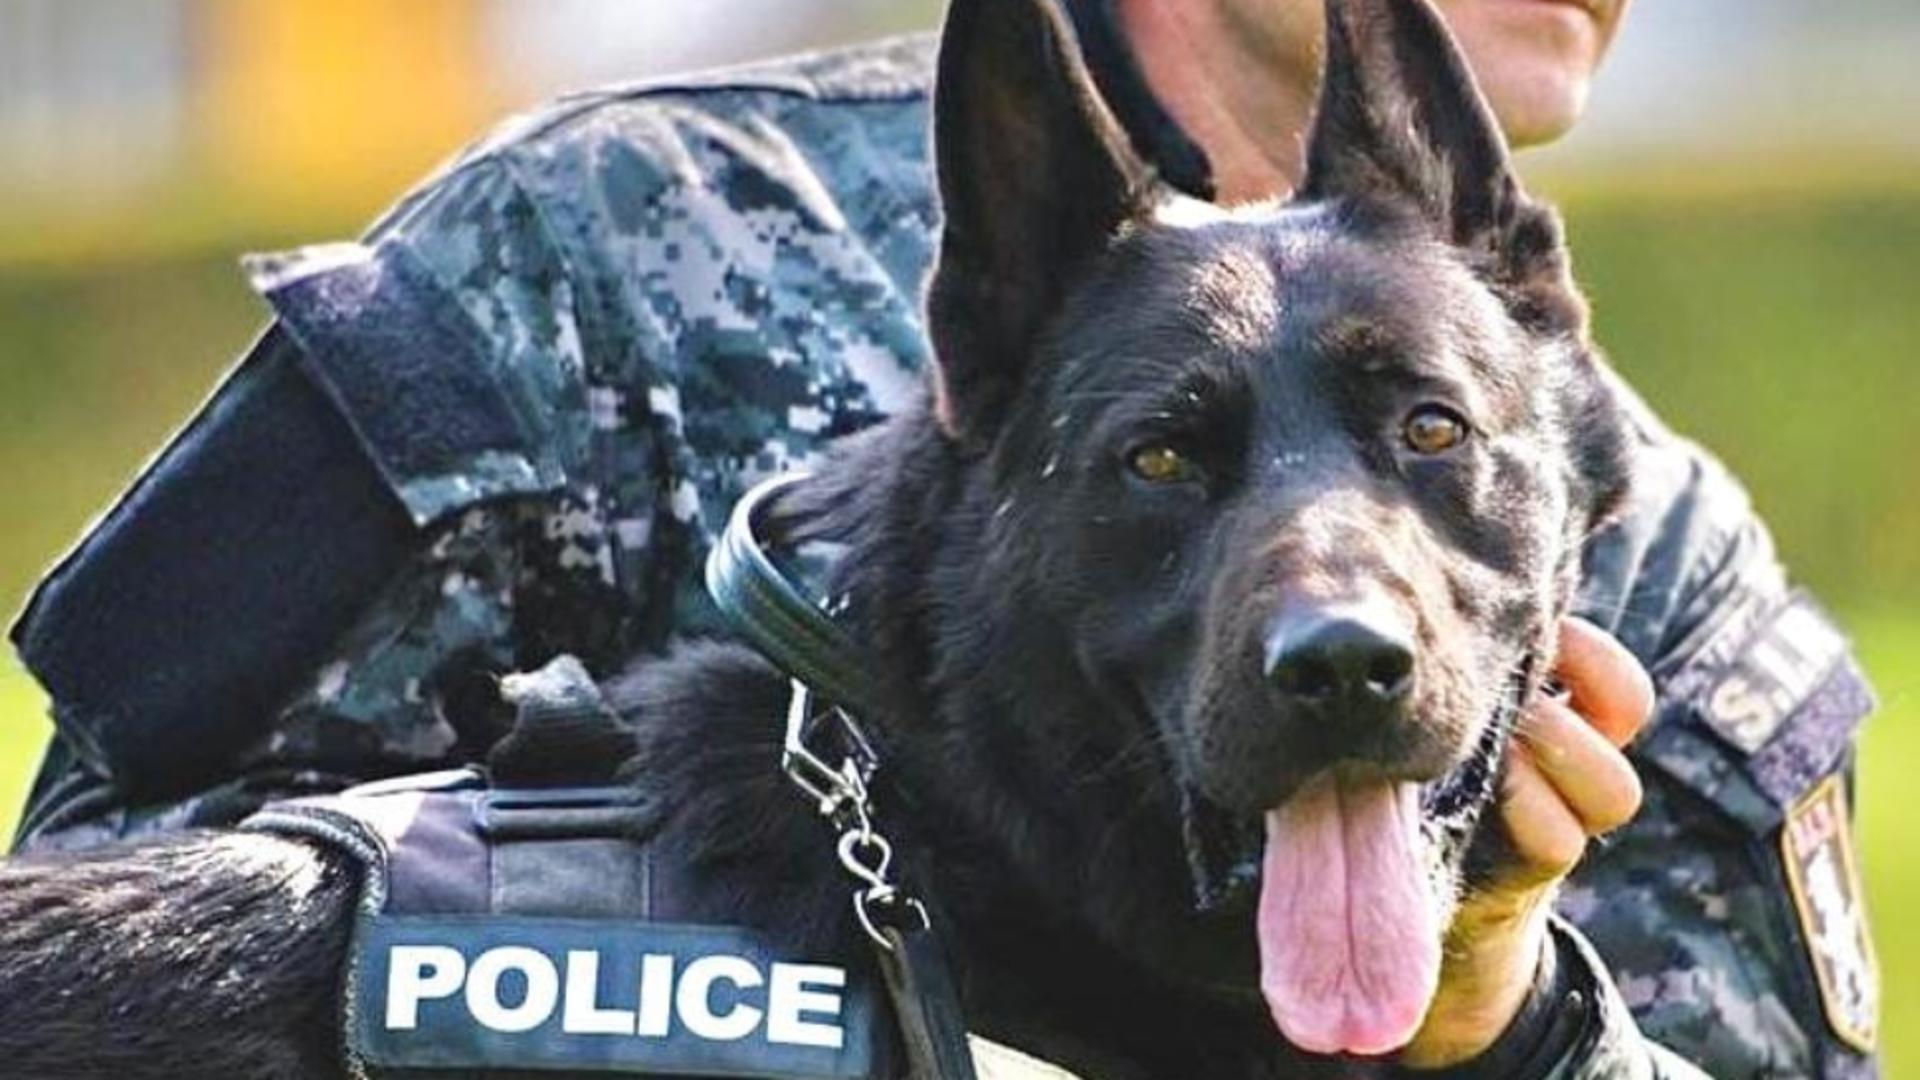 Poliţia Română scoate la concurs zeci de posturi de agent şi conductor de câini. Care este condiția esențială?